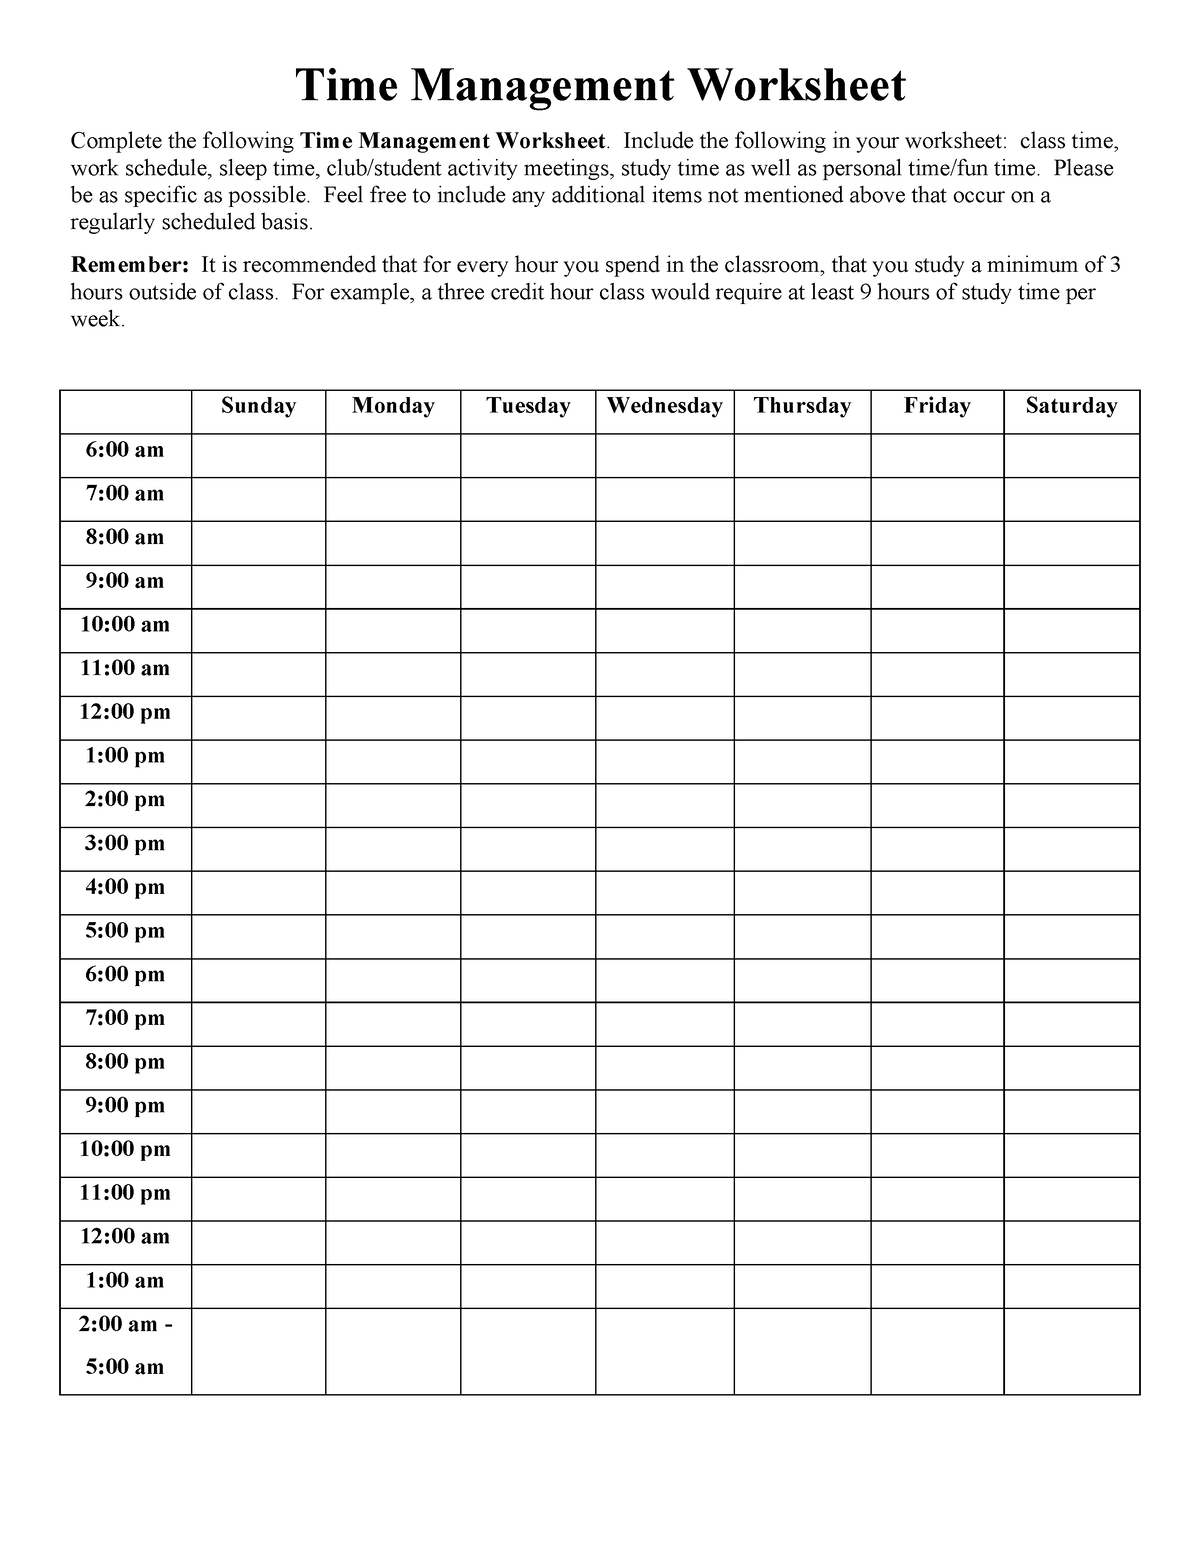 Time management worksheet pdf sk Time Management Worksheet Complete